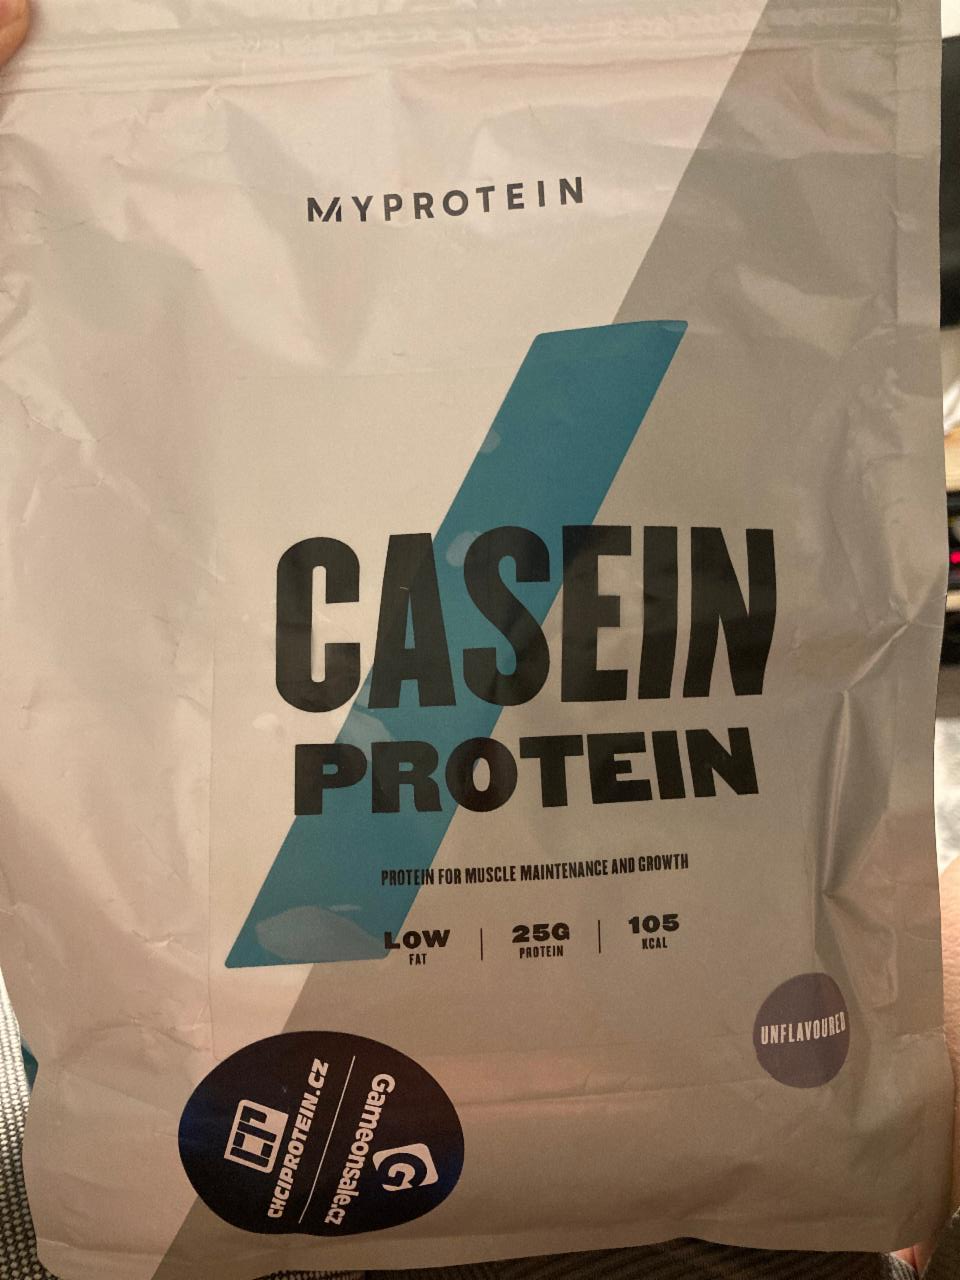 Fotografie - Casein Protein Unflavored MyProtein